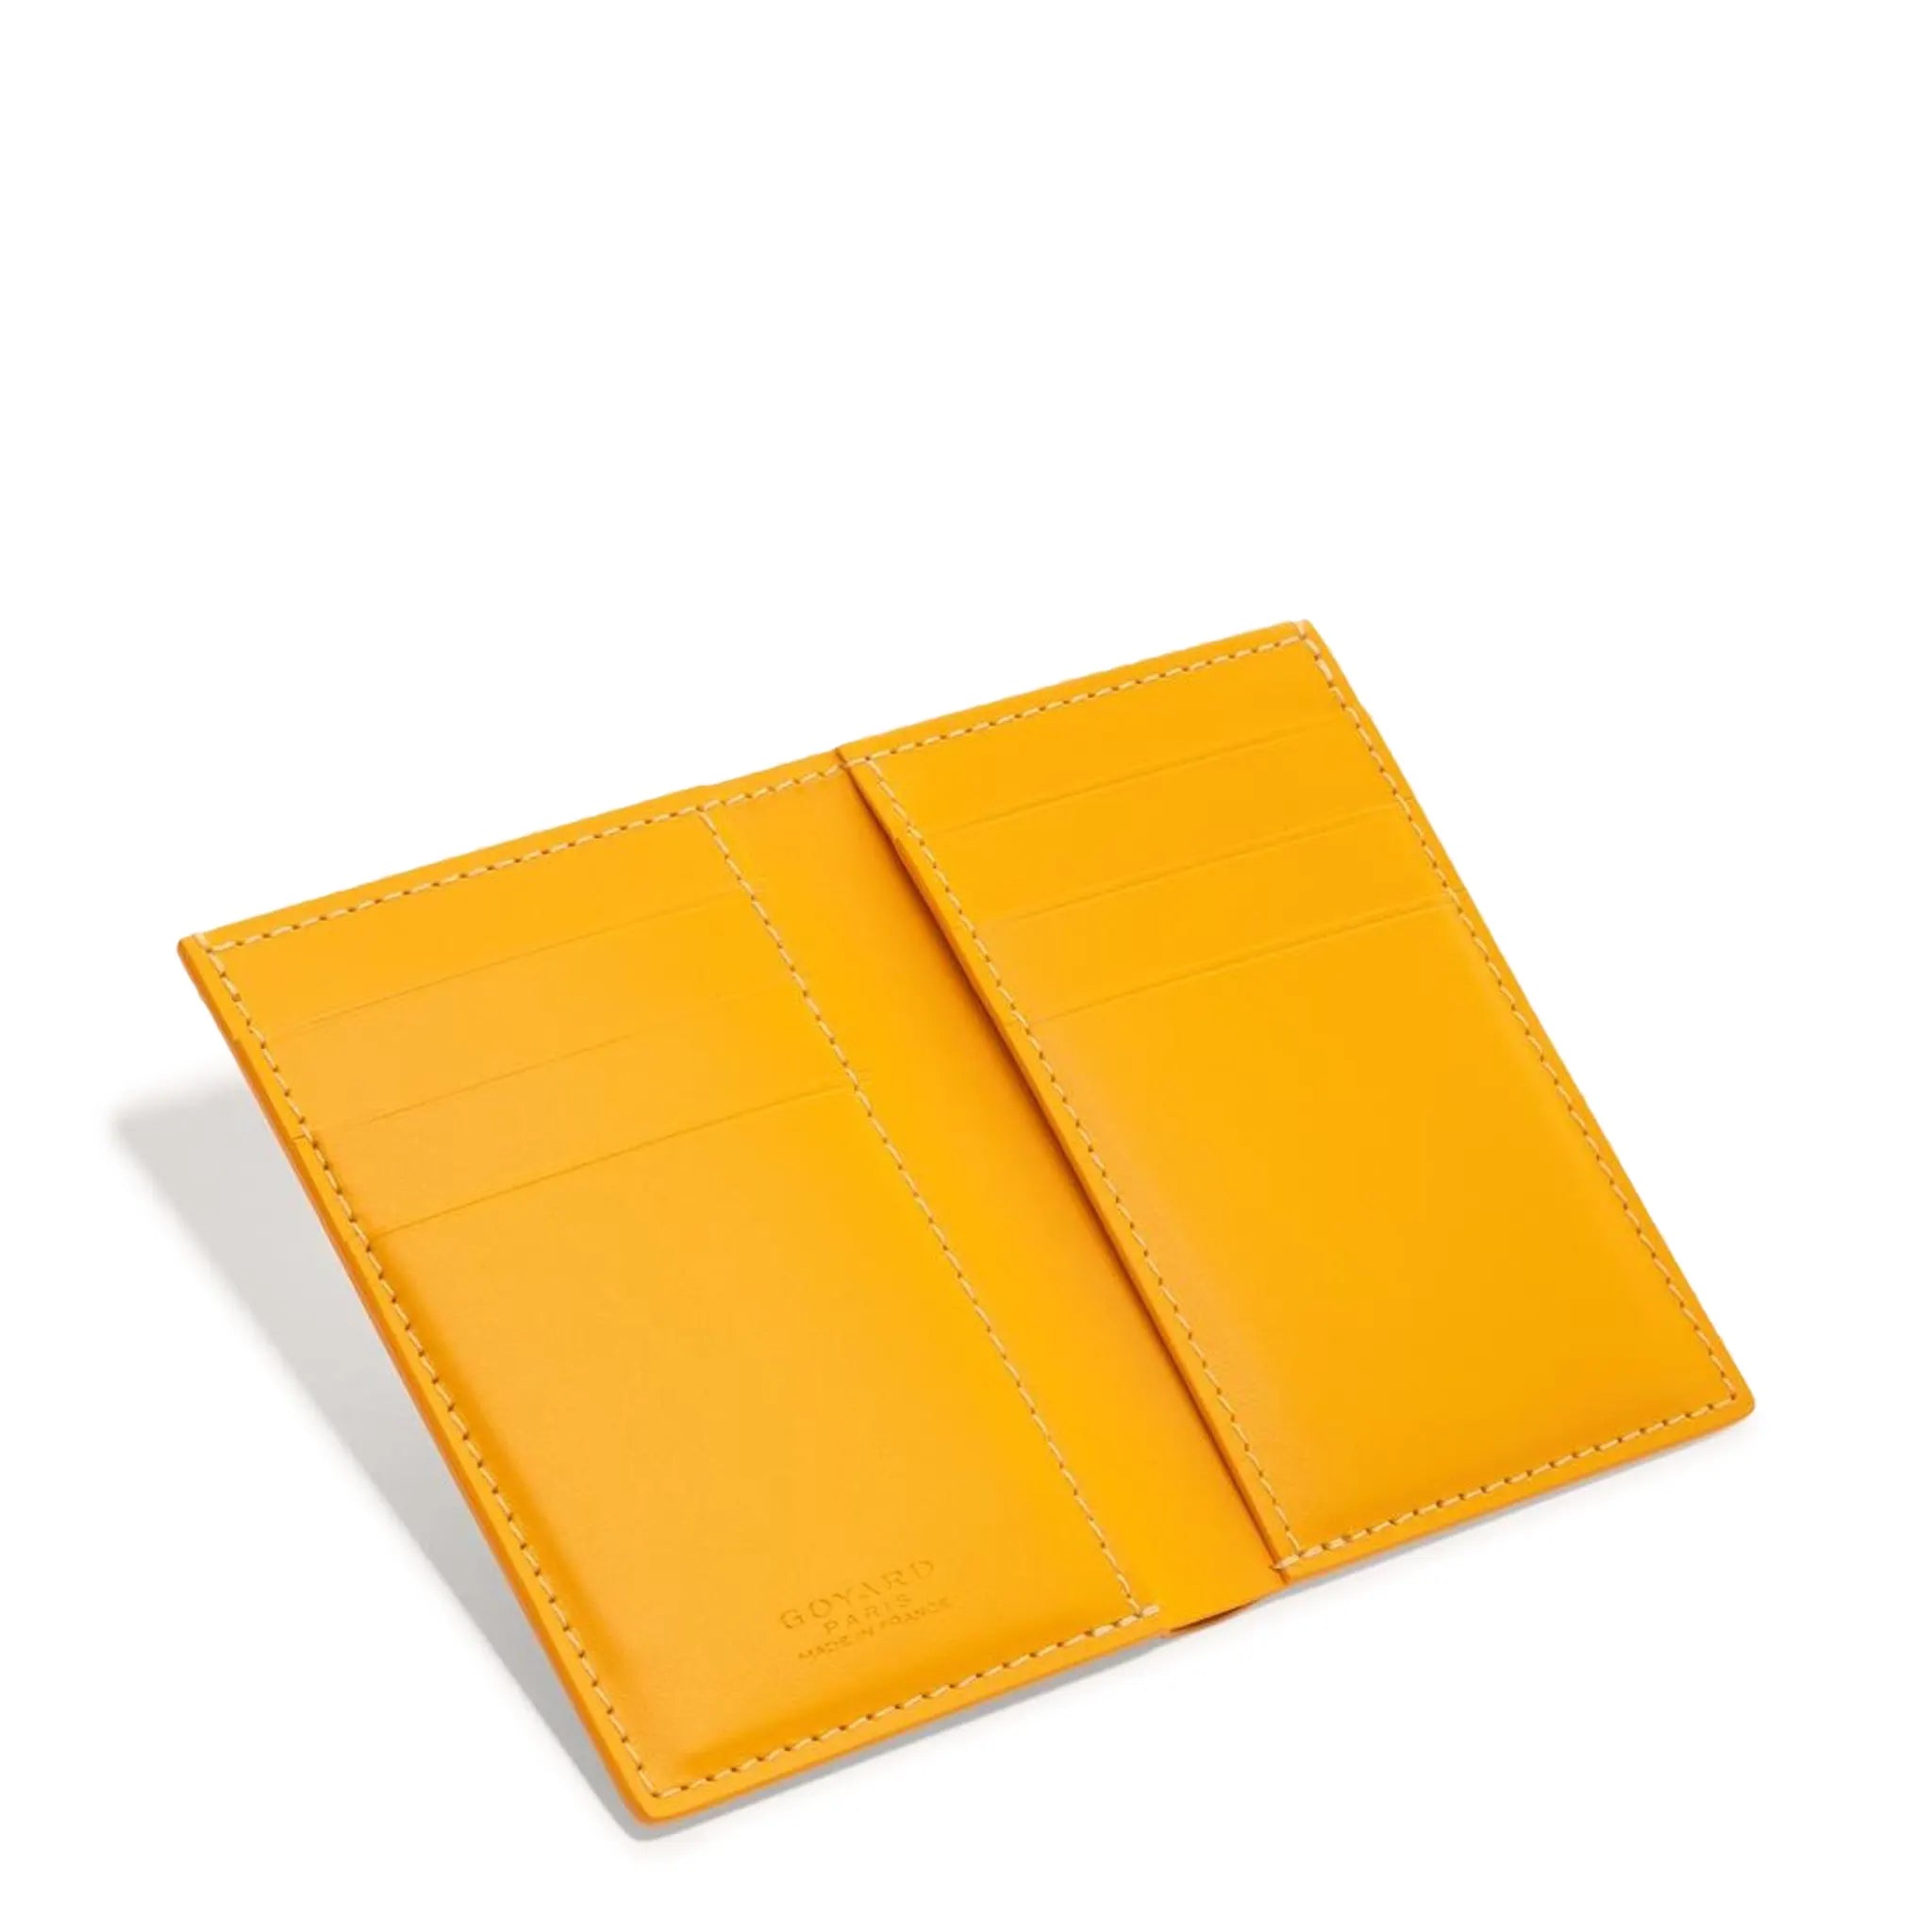 Inside view of Goyard Saint-Pierre Card Wallet Yellow STPIE2PMLTY08CL08P